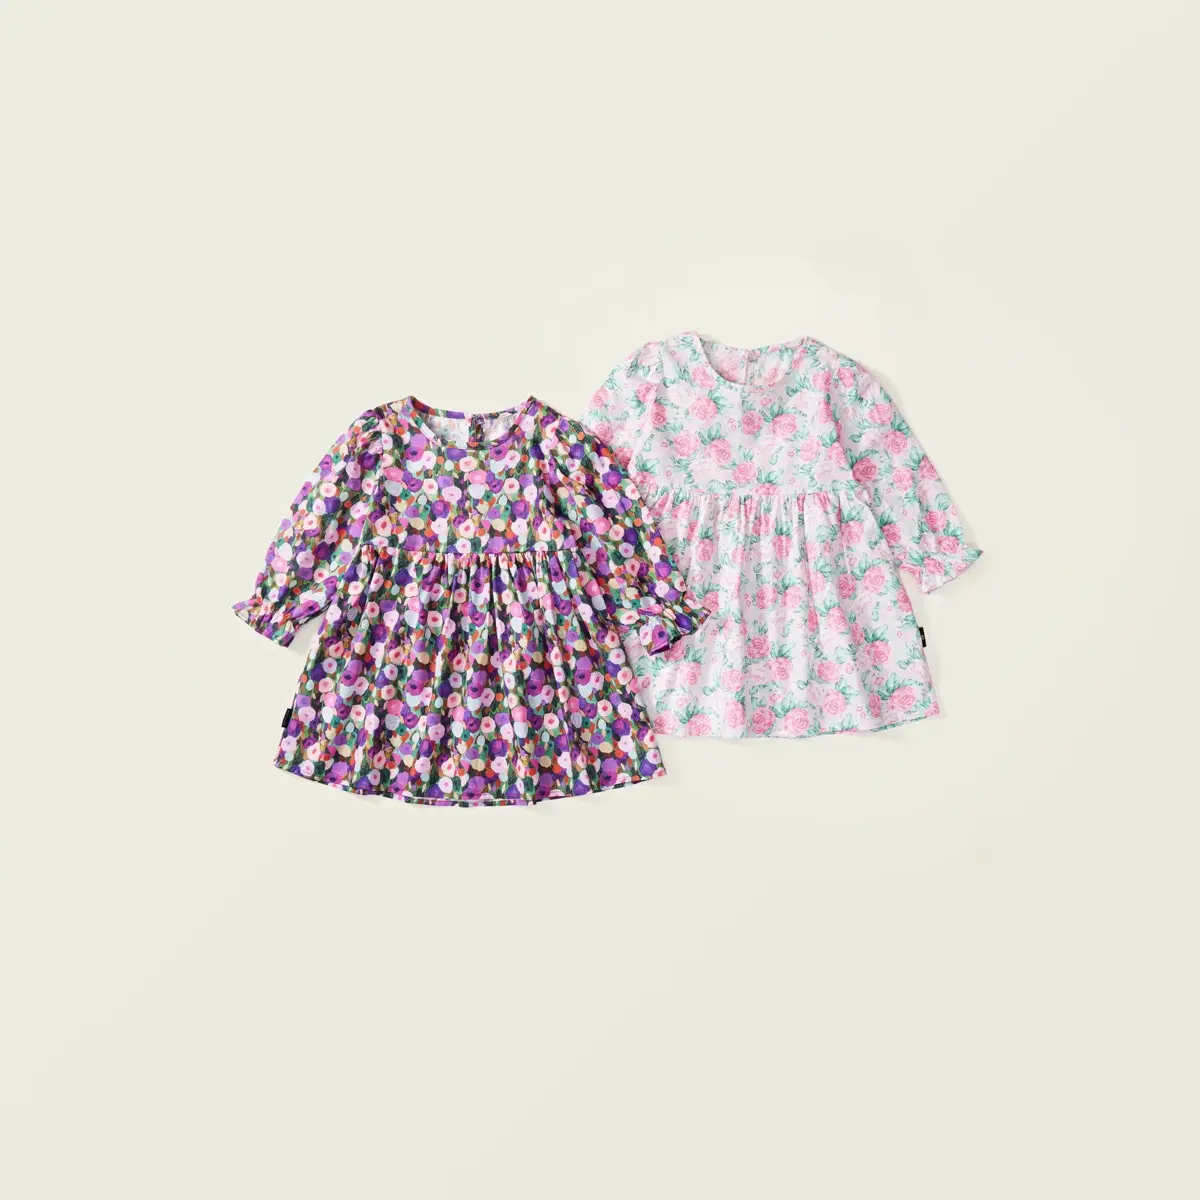 스팟 도매 소녀 가을 드레스 캐주얼 인쇄 귀여운 면화 드레스 아동 의류 소녀 공주 옷